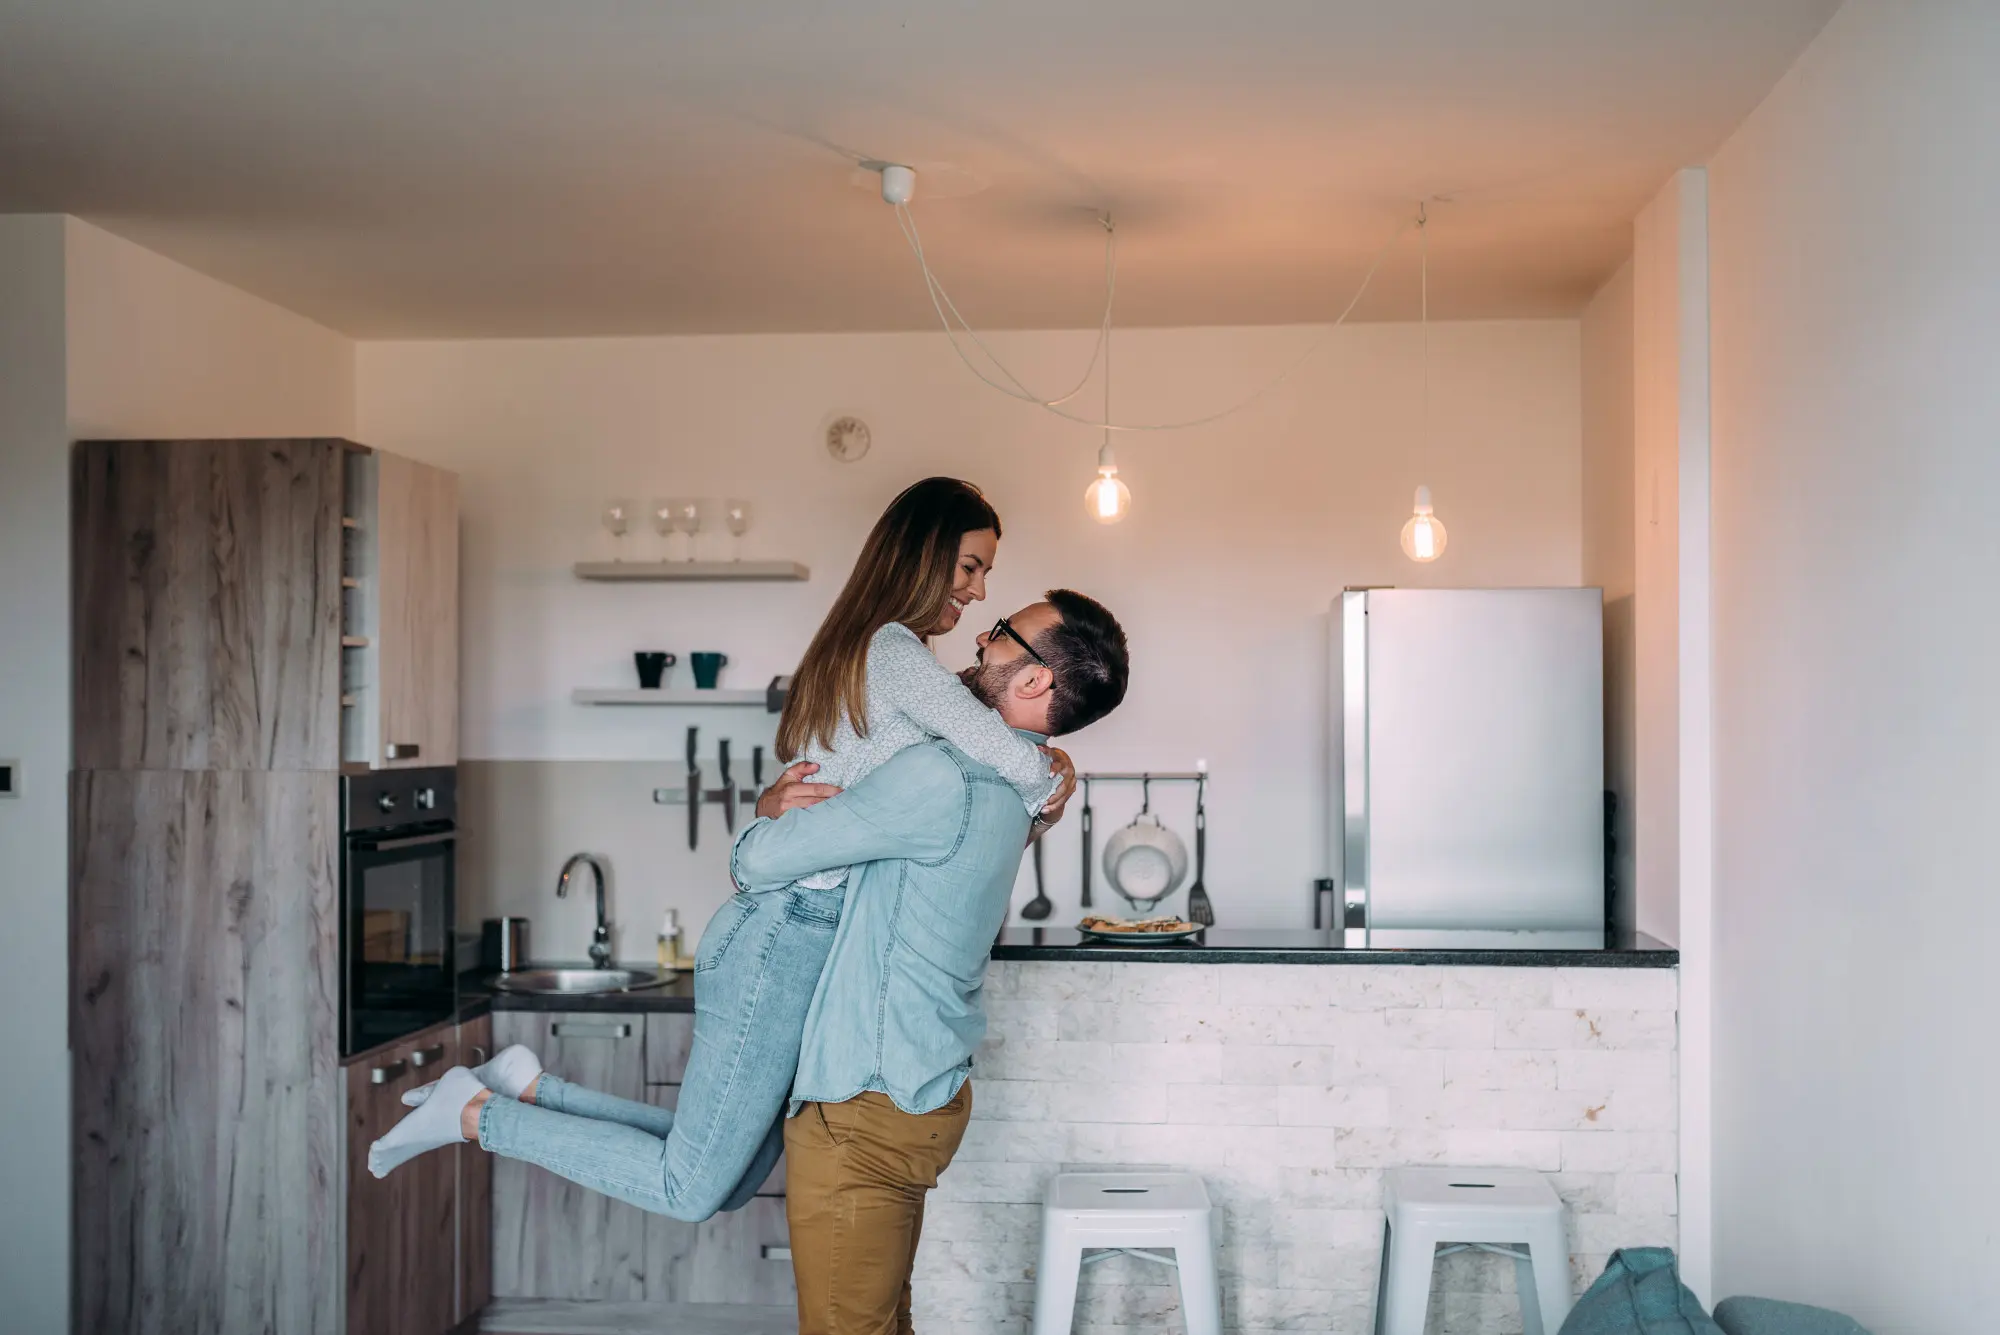 5 Melhores tipos de imóveis para viver a dois: imagem de casal se abraçando perto da cozinha, com fogão, geladeira, cadeiras e acessórios.